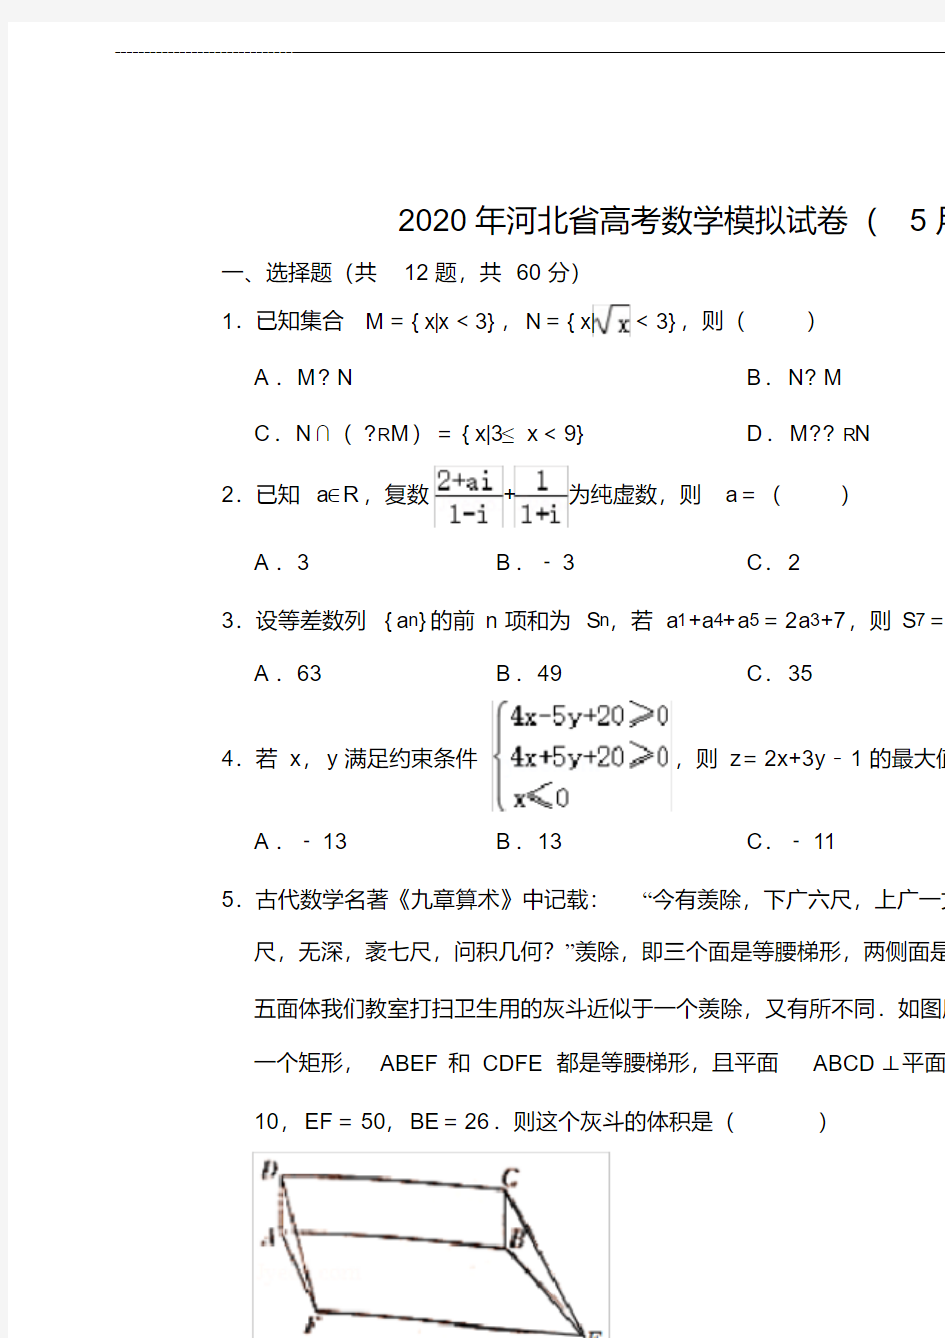 2020年河北省高考数学模拟试卷( 5月份)